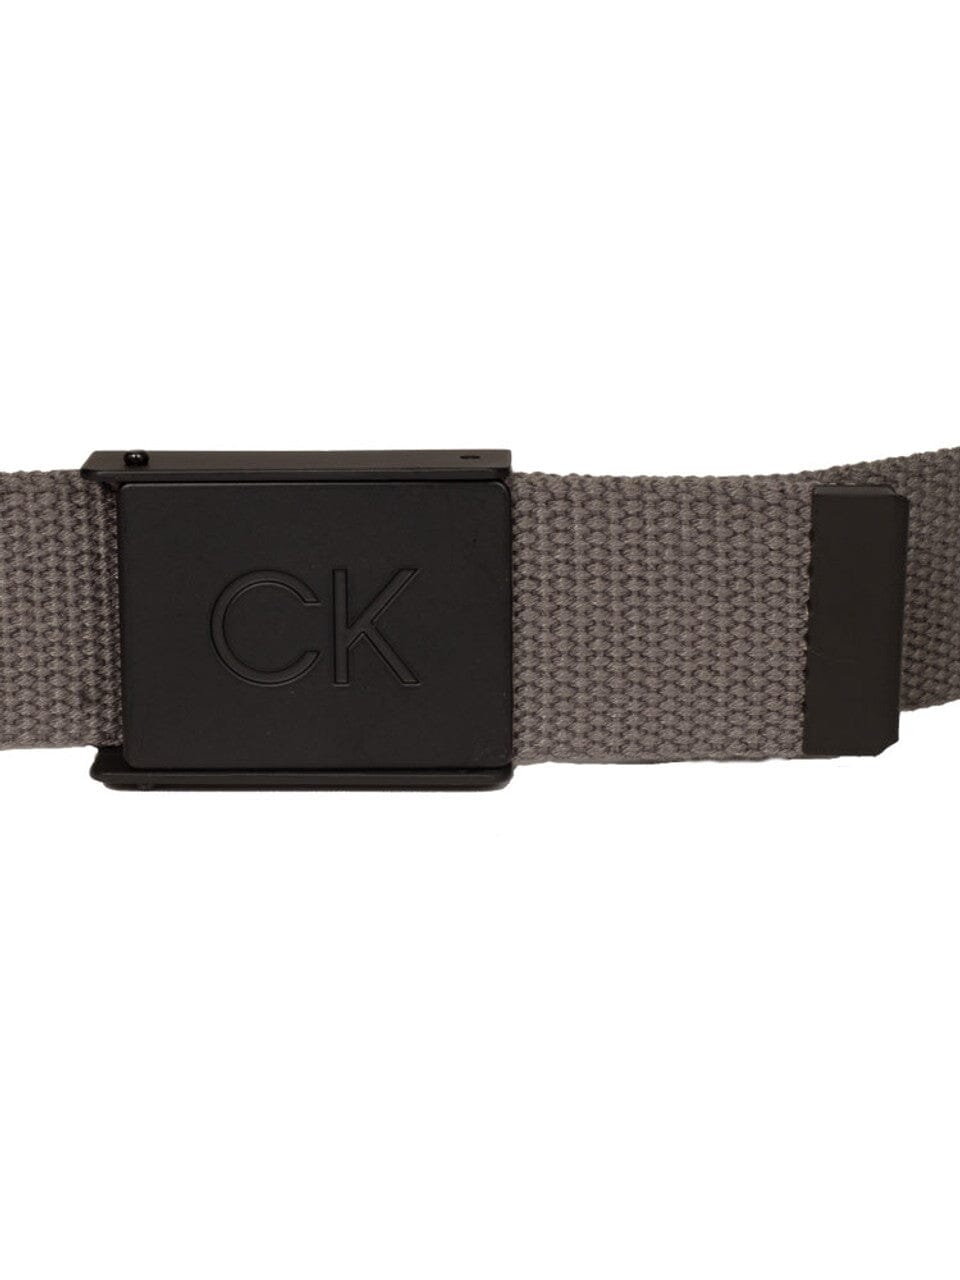 Cinturón con cincha con monograma de Calvin Klein ****PRE-ORDEN AHORA**** CINTURONES CALVIN KLEIN PARA HOMBRE Calvin Klein